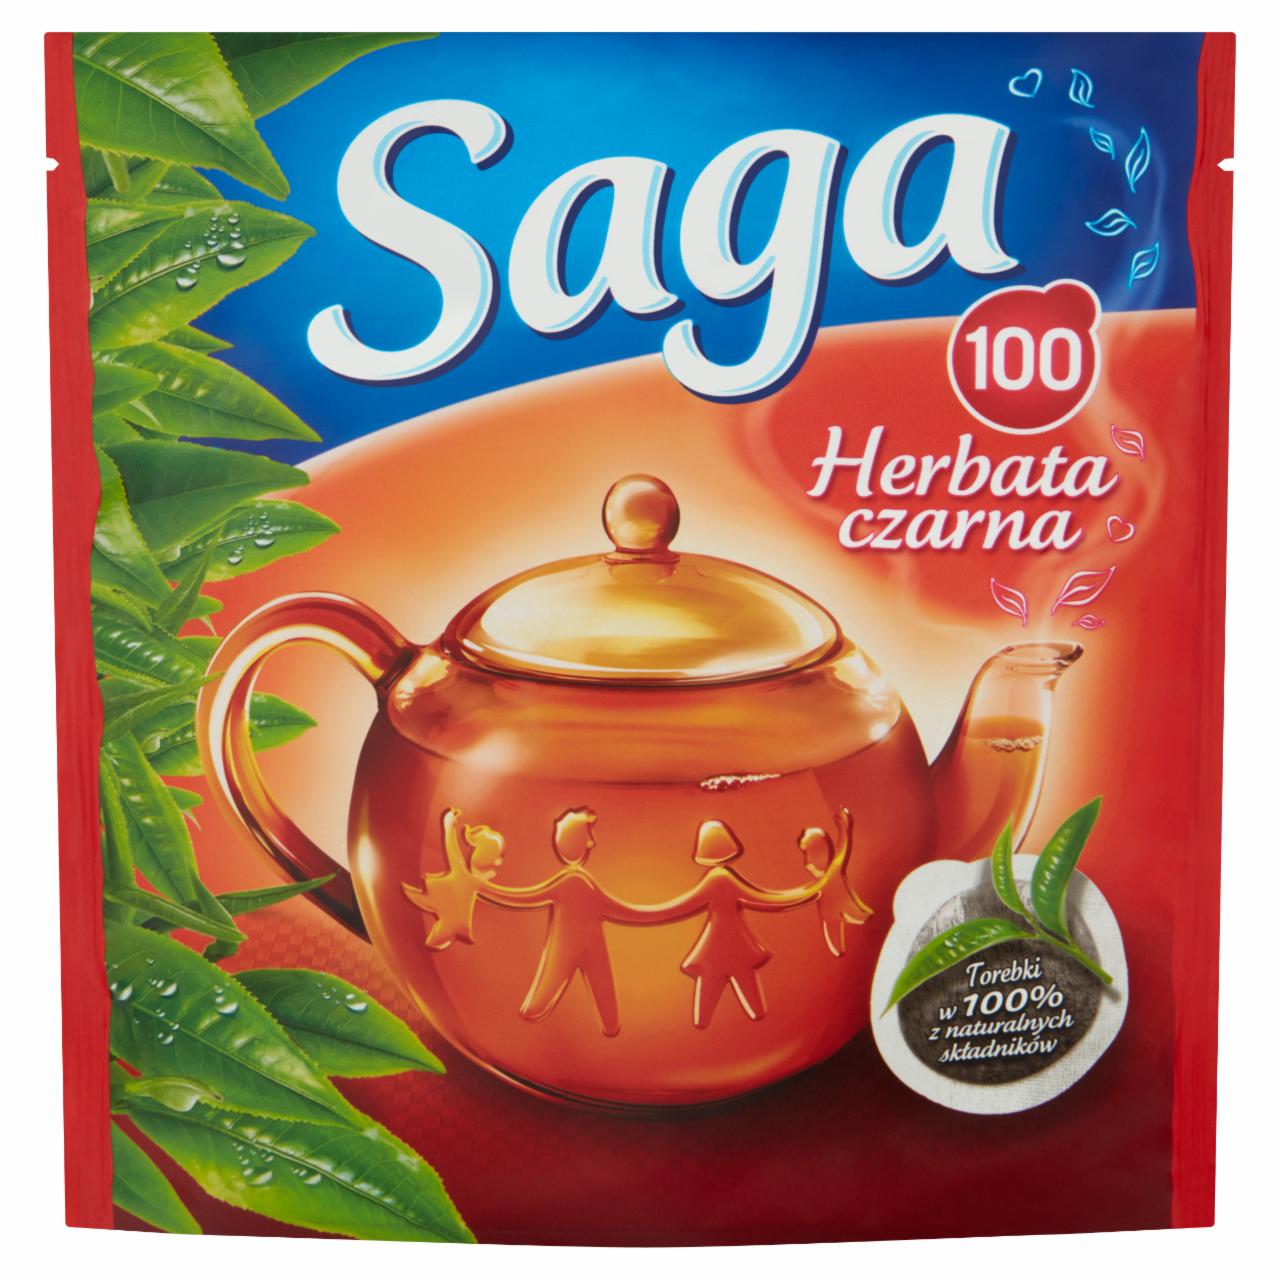 Zdjęcia - Saga Herbata czarna 140 g (100 torebek)